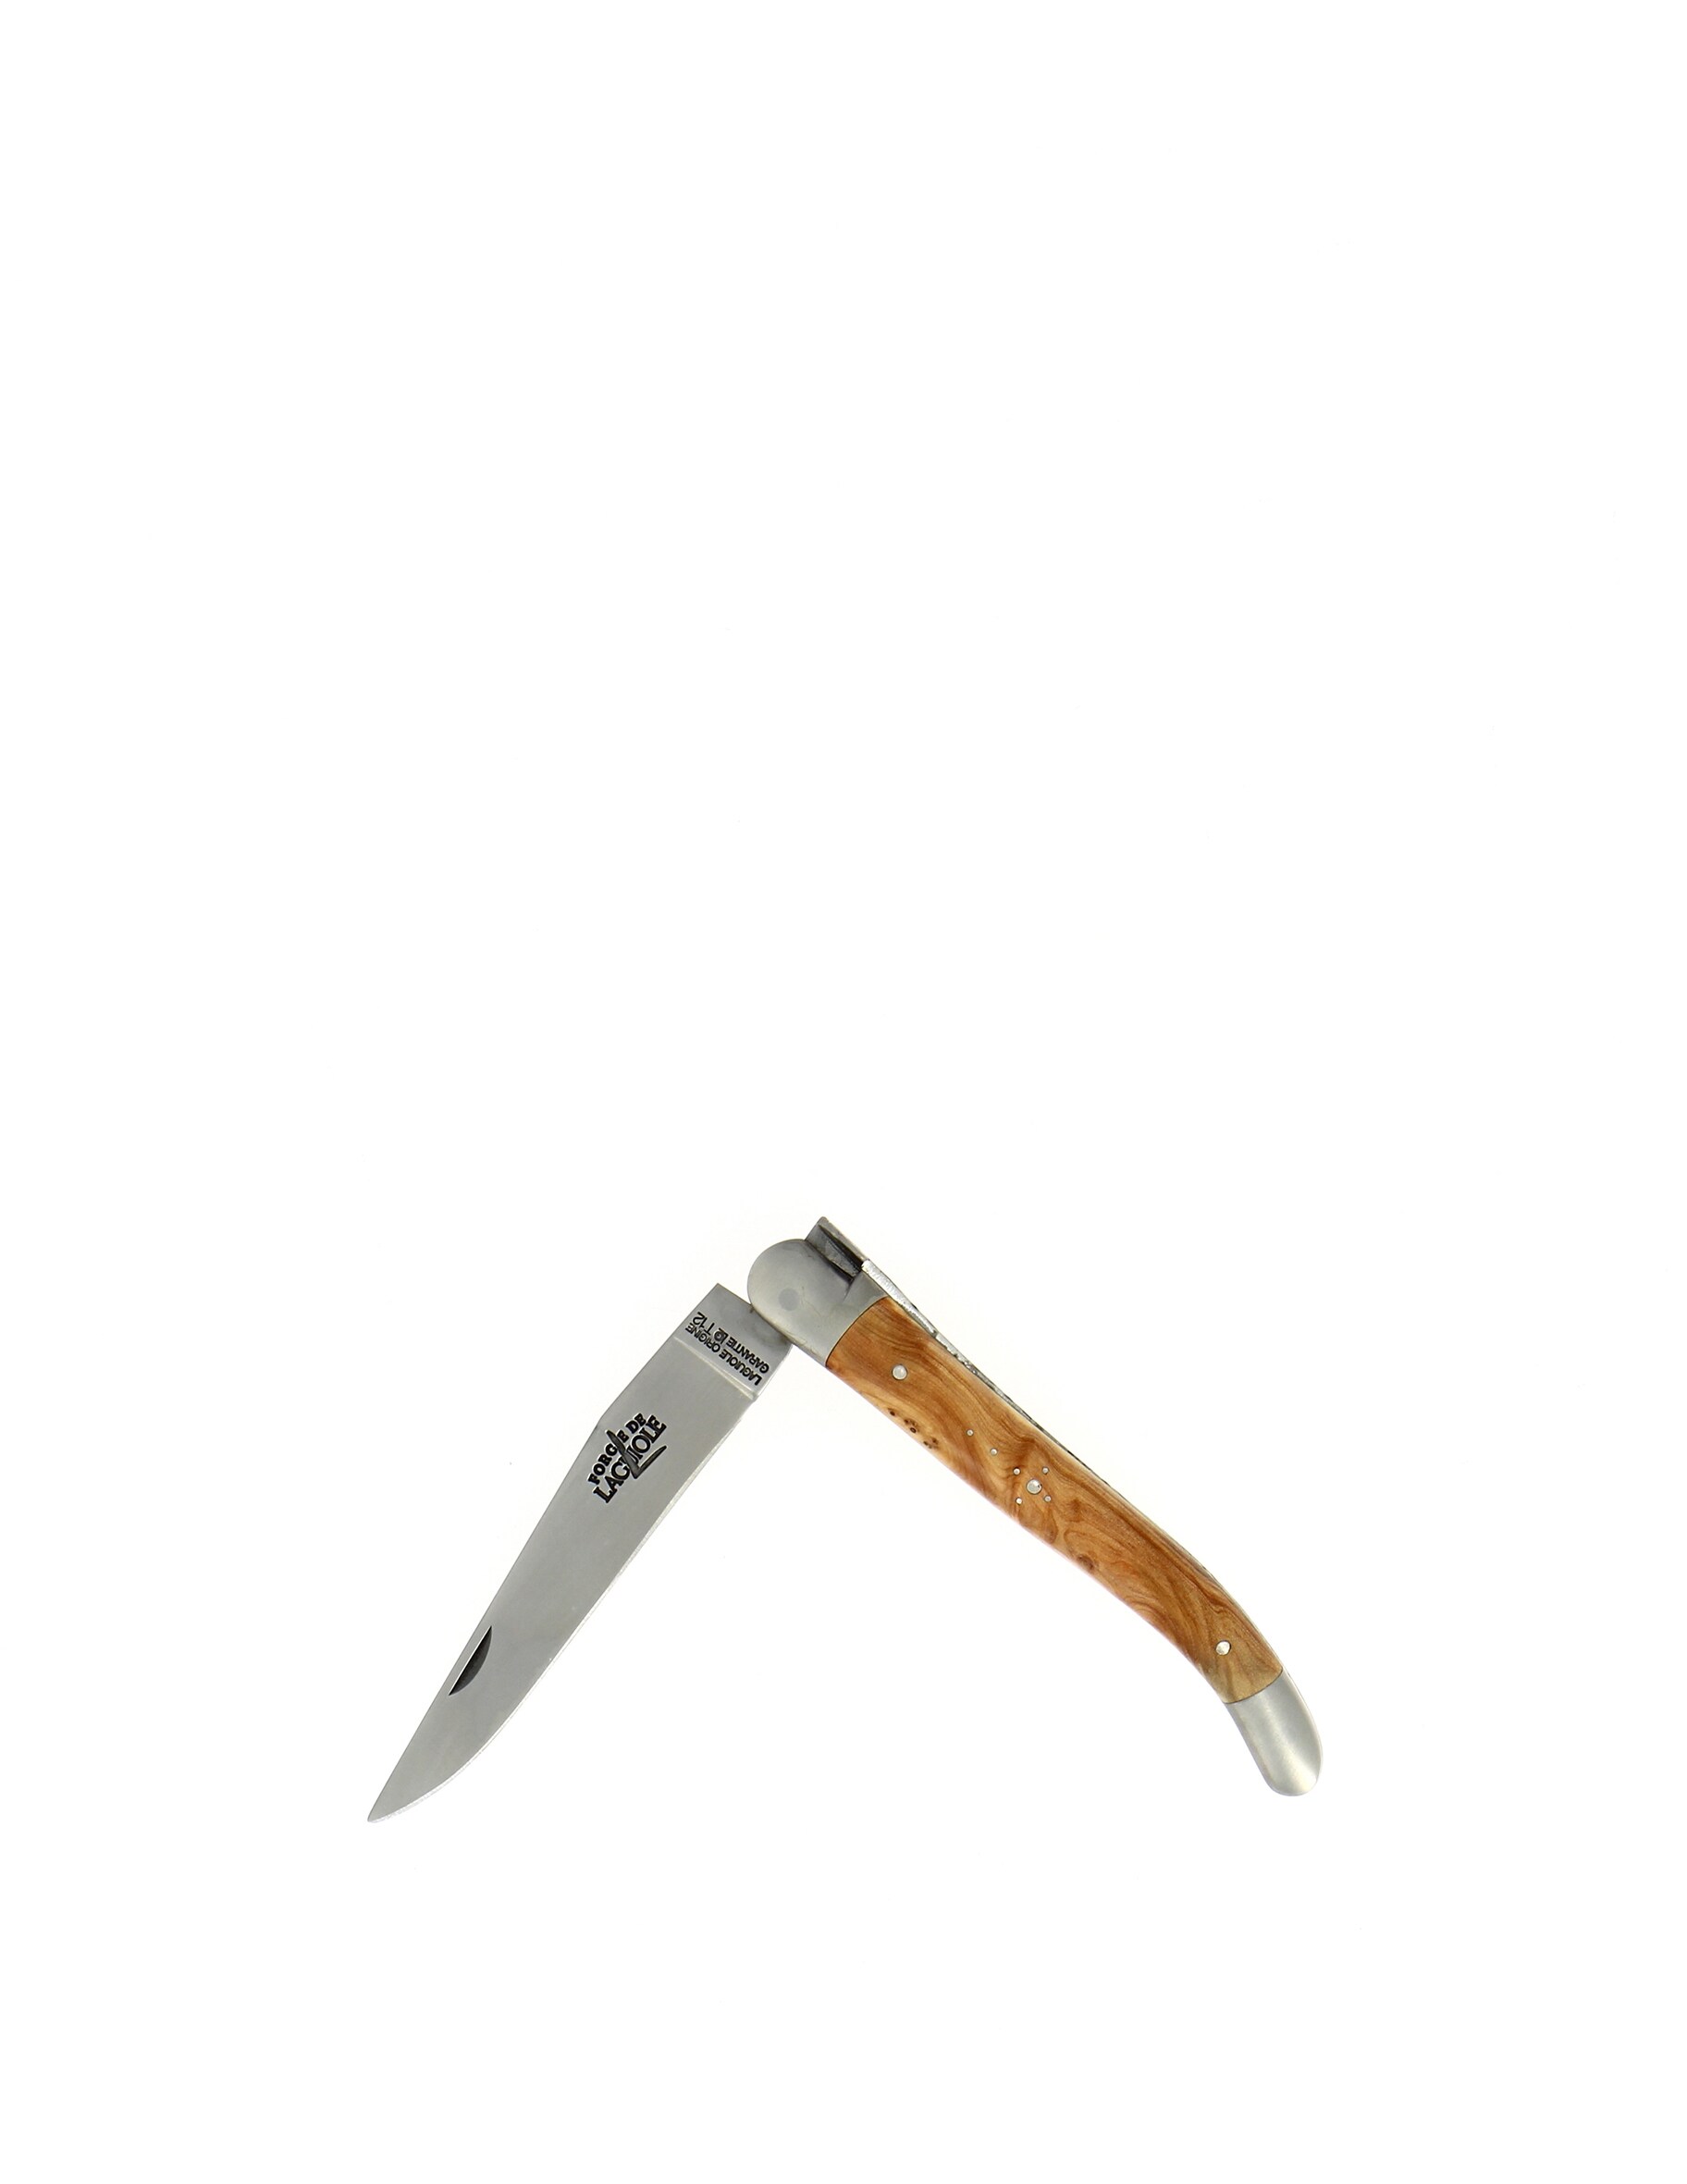 Карманный нож 11 см с ручкой из можжевельника Forge De Laguiole сабля en aubrac sabre сhampagne olivier для сабража 40 см cms99oli hzb1 forge de laguiole